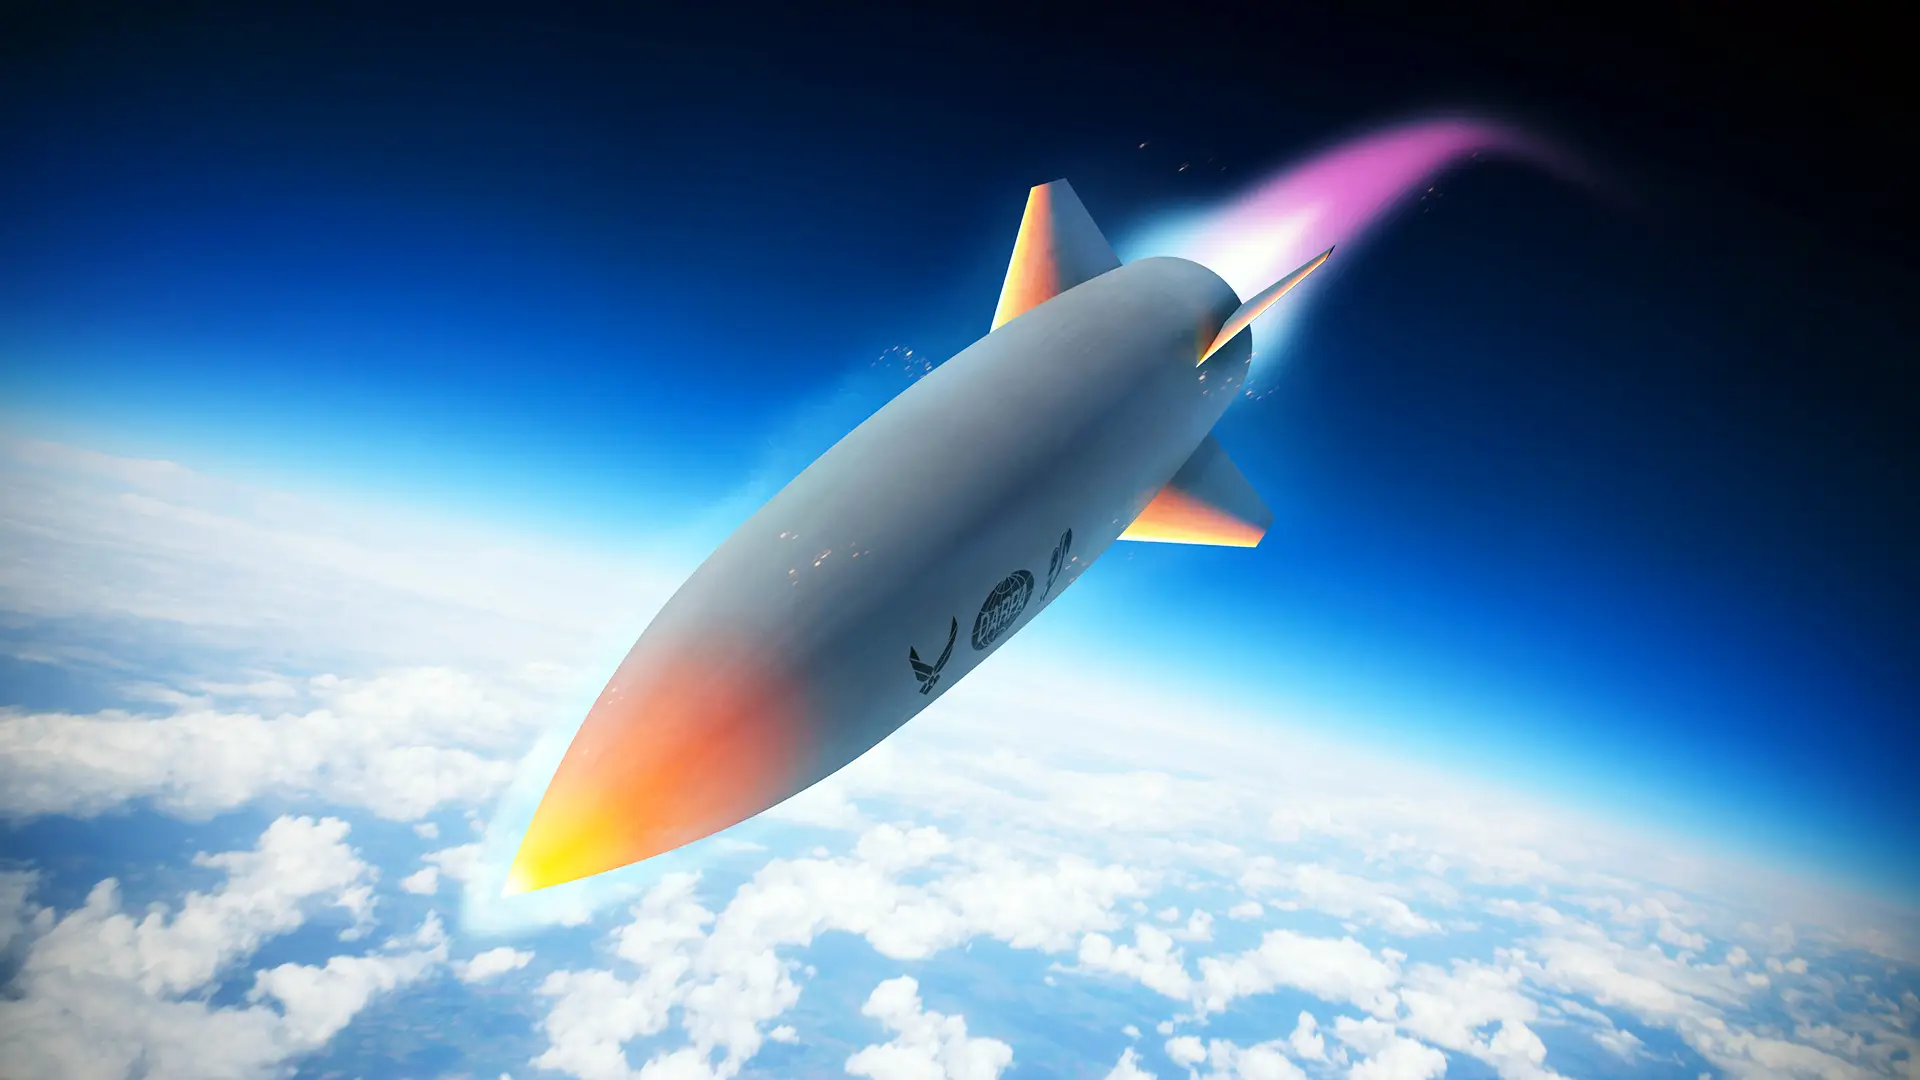 Ядерный бомбардировщик B-52 Stratofortress запустил гиперзвуковую ракету HAWC со скоростью более 6100 км/ч